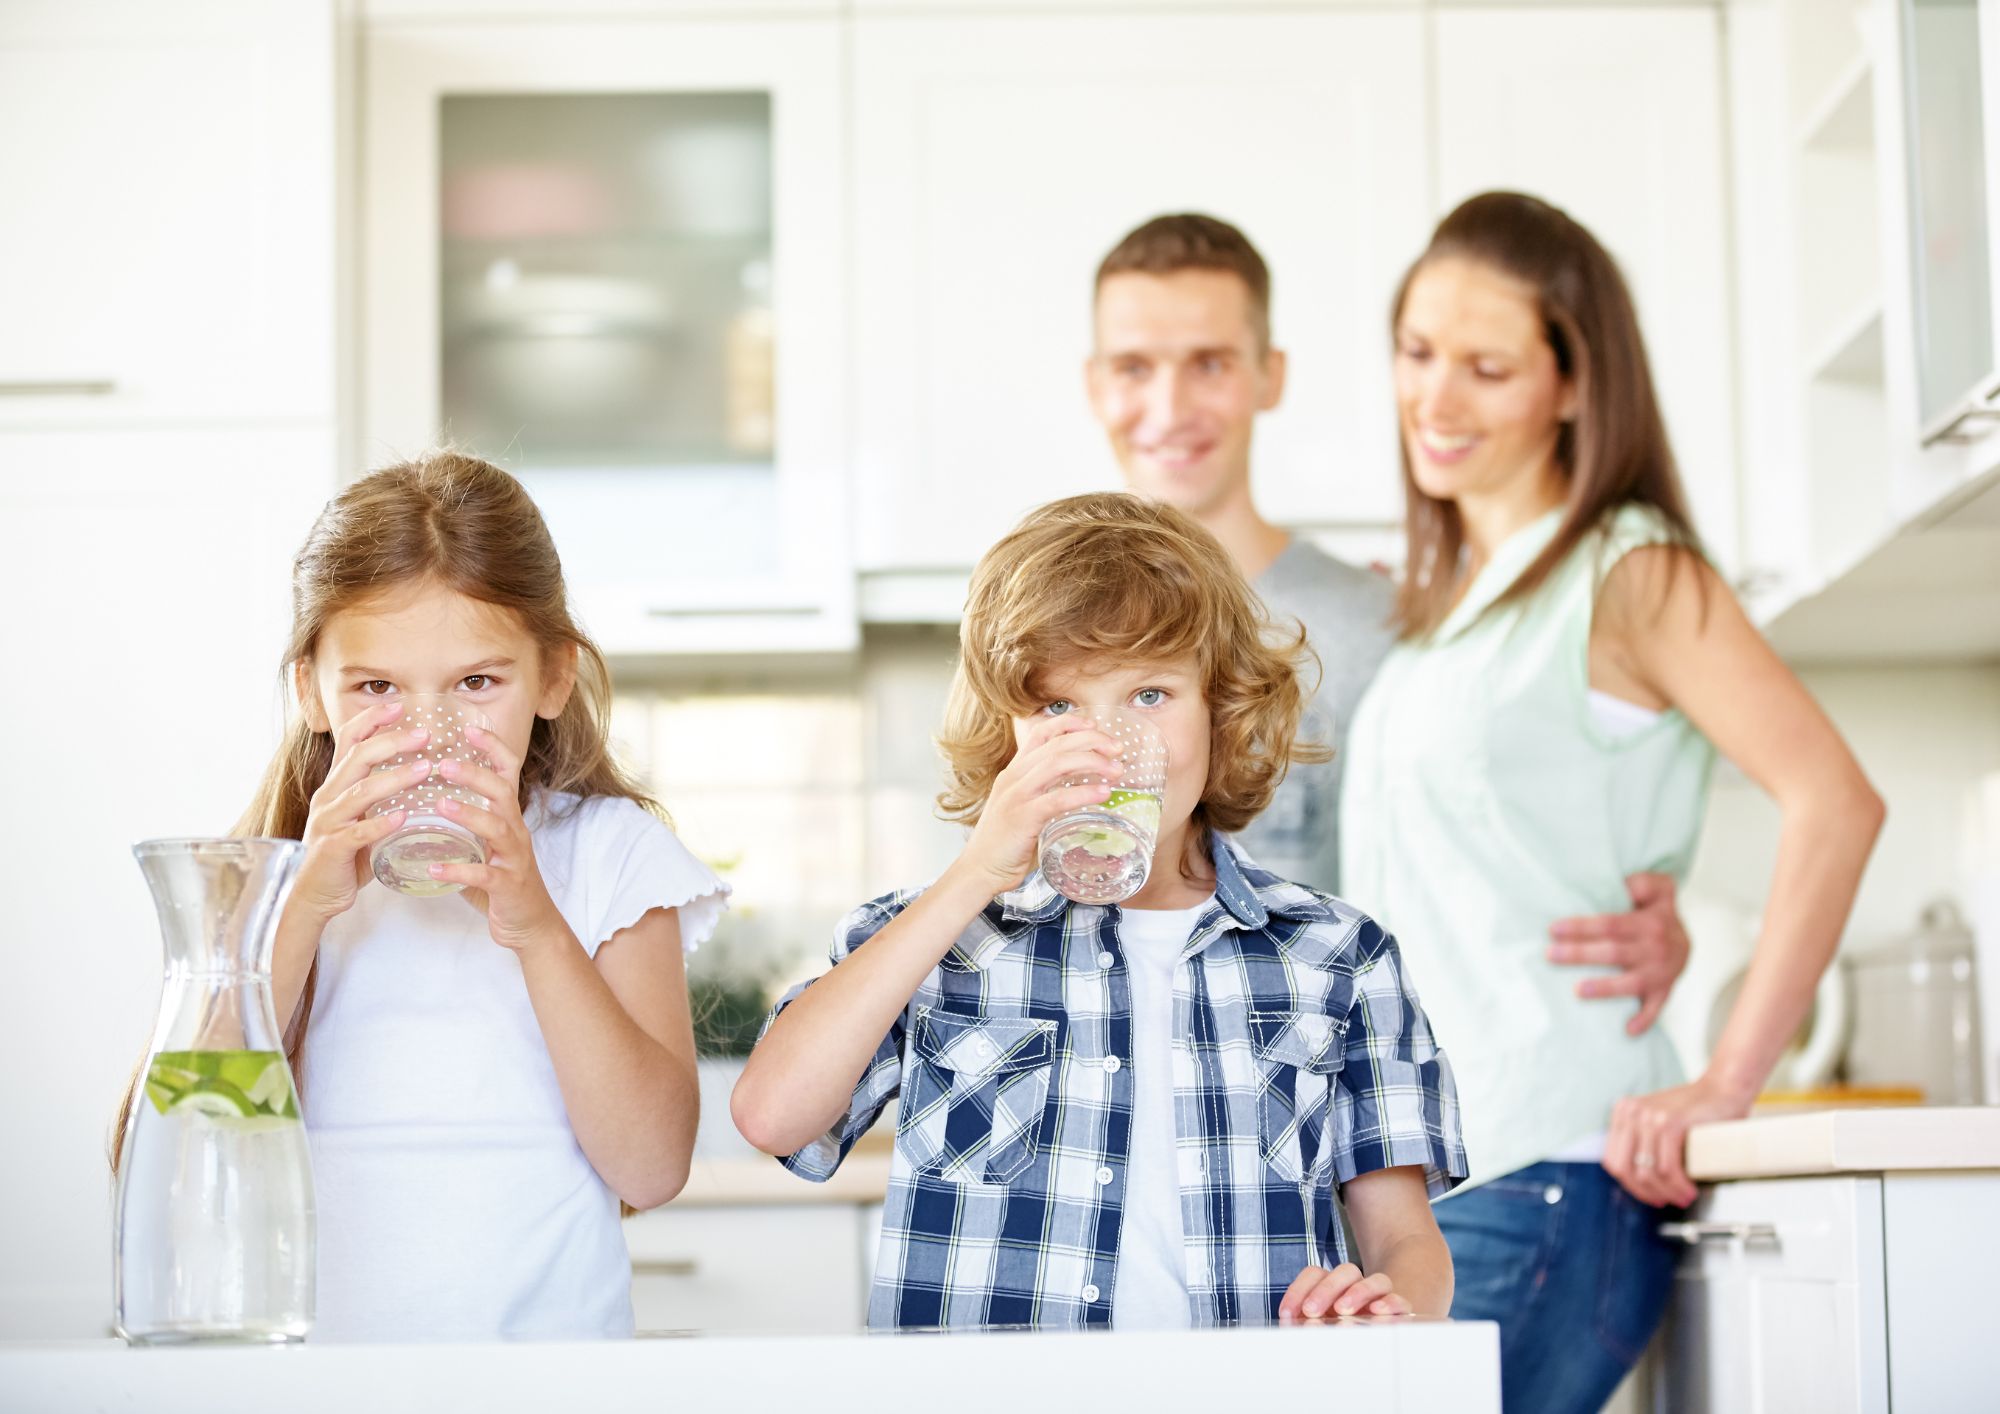 komunikácia medzi rodičmi a deťmi je veľmi dôležitá, pretože rodičia dokúžu zabrániť kúpe týchto nezdravých produktov